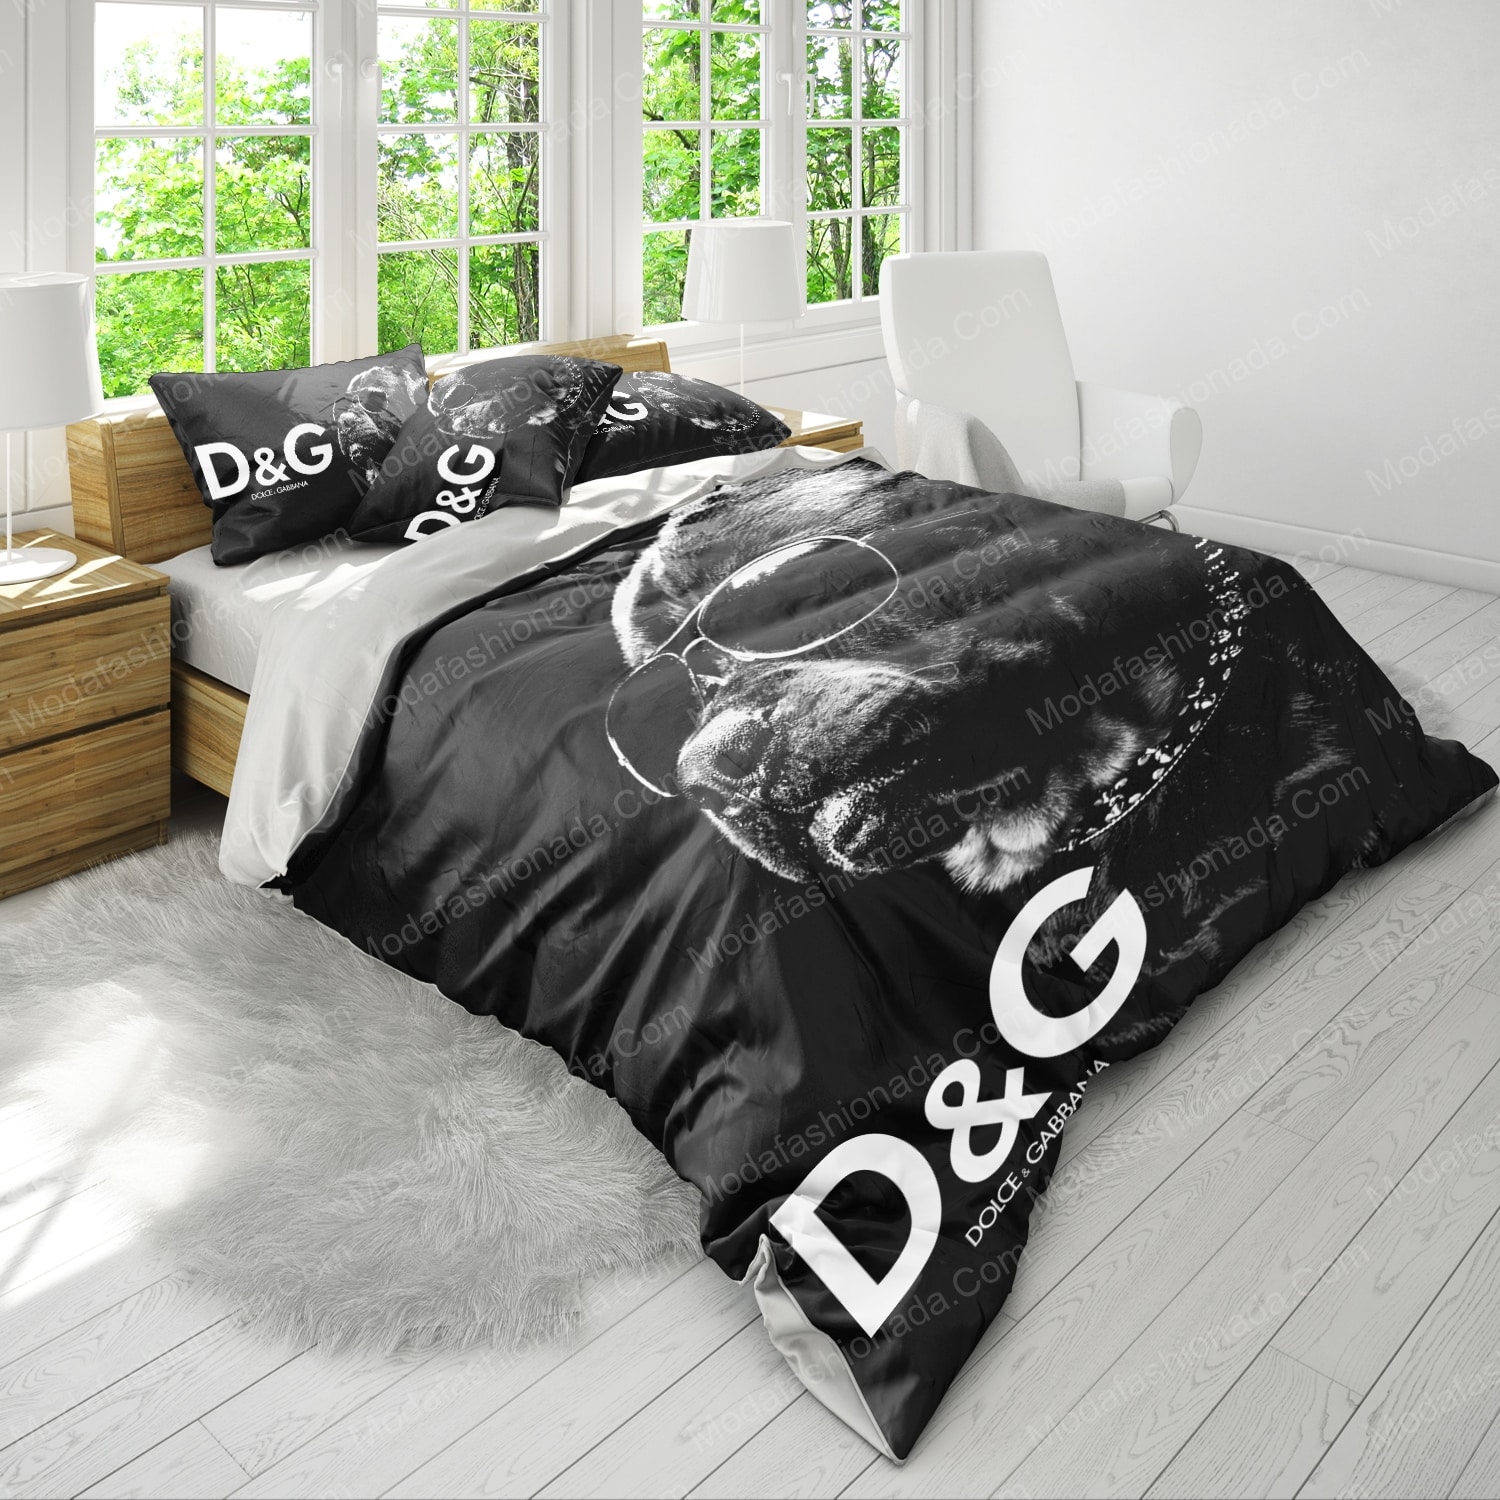 Buy Rotweller Dolce & Gabbana Bedding Sets Bed Sets, Bedroom Sets, Comforter  Sets, Duvet Cover, Bedspread